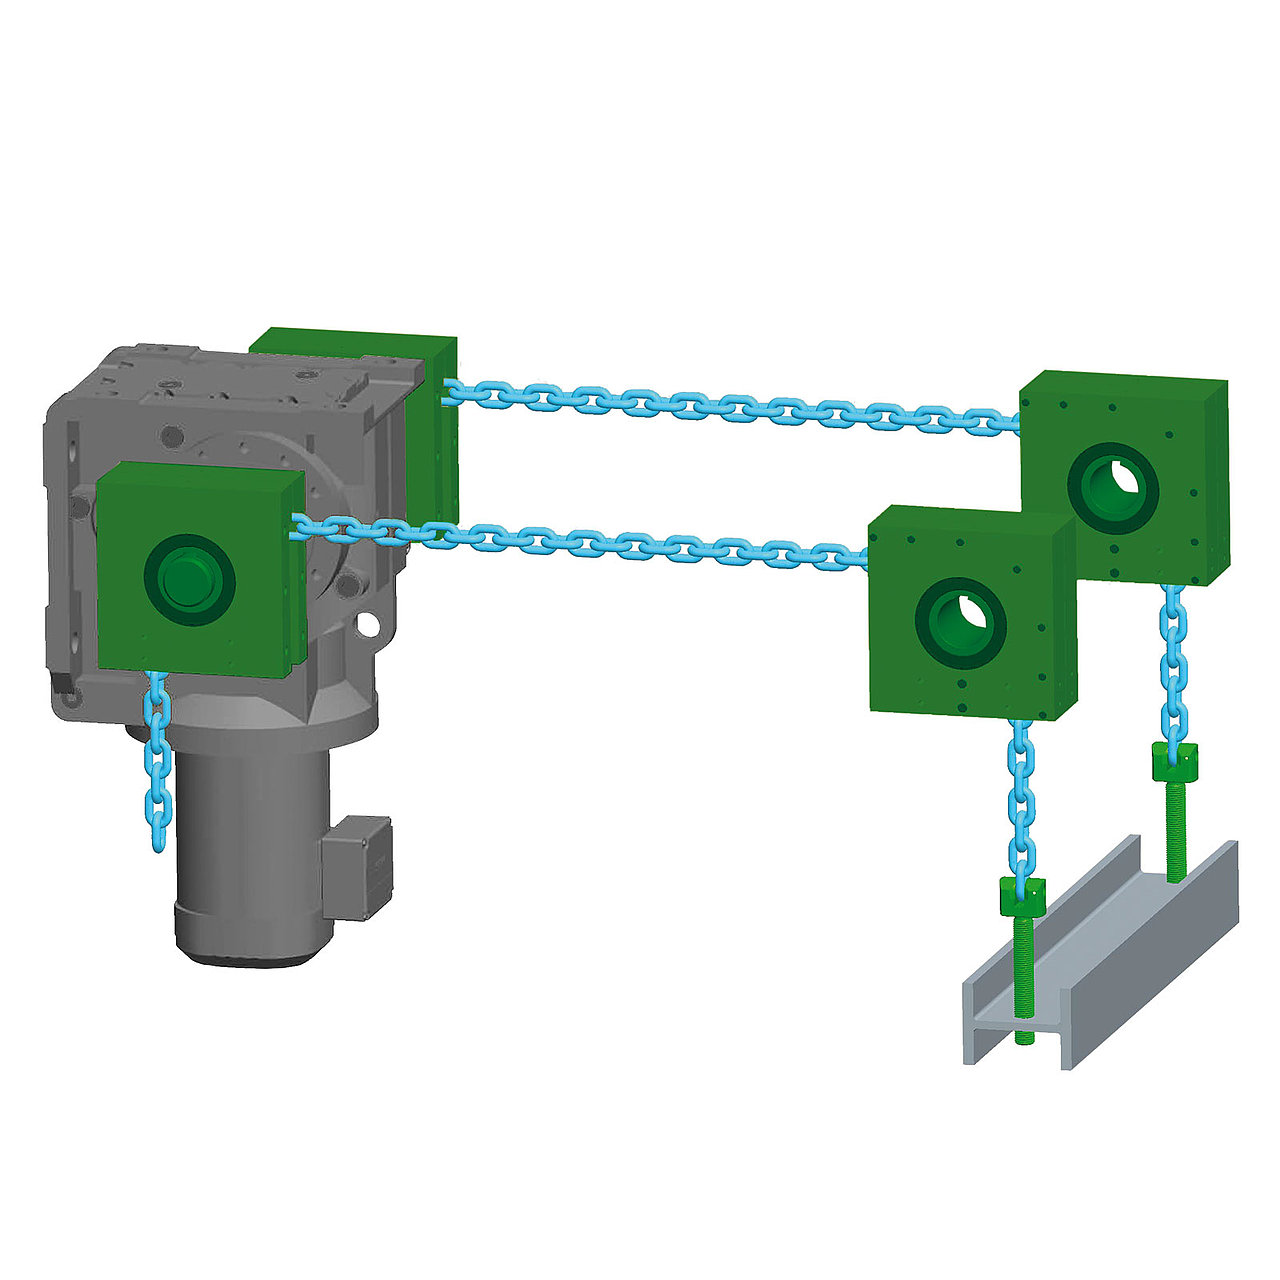 Multiple chain strand systems PI / Gamma